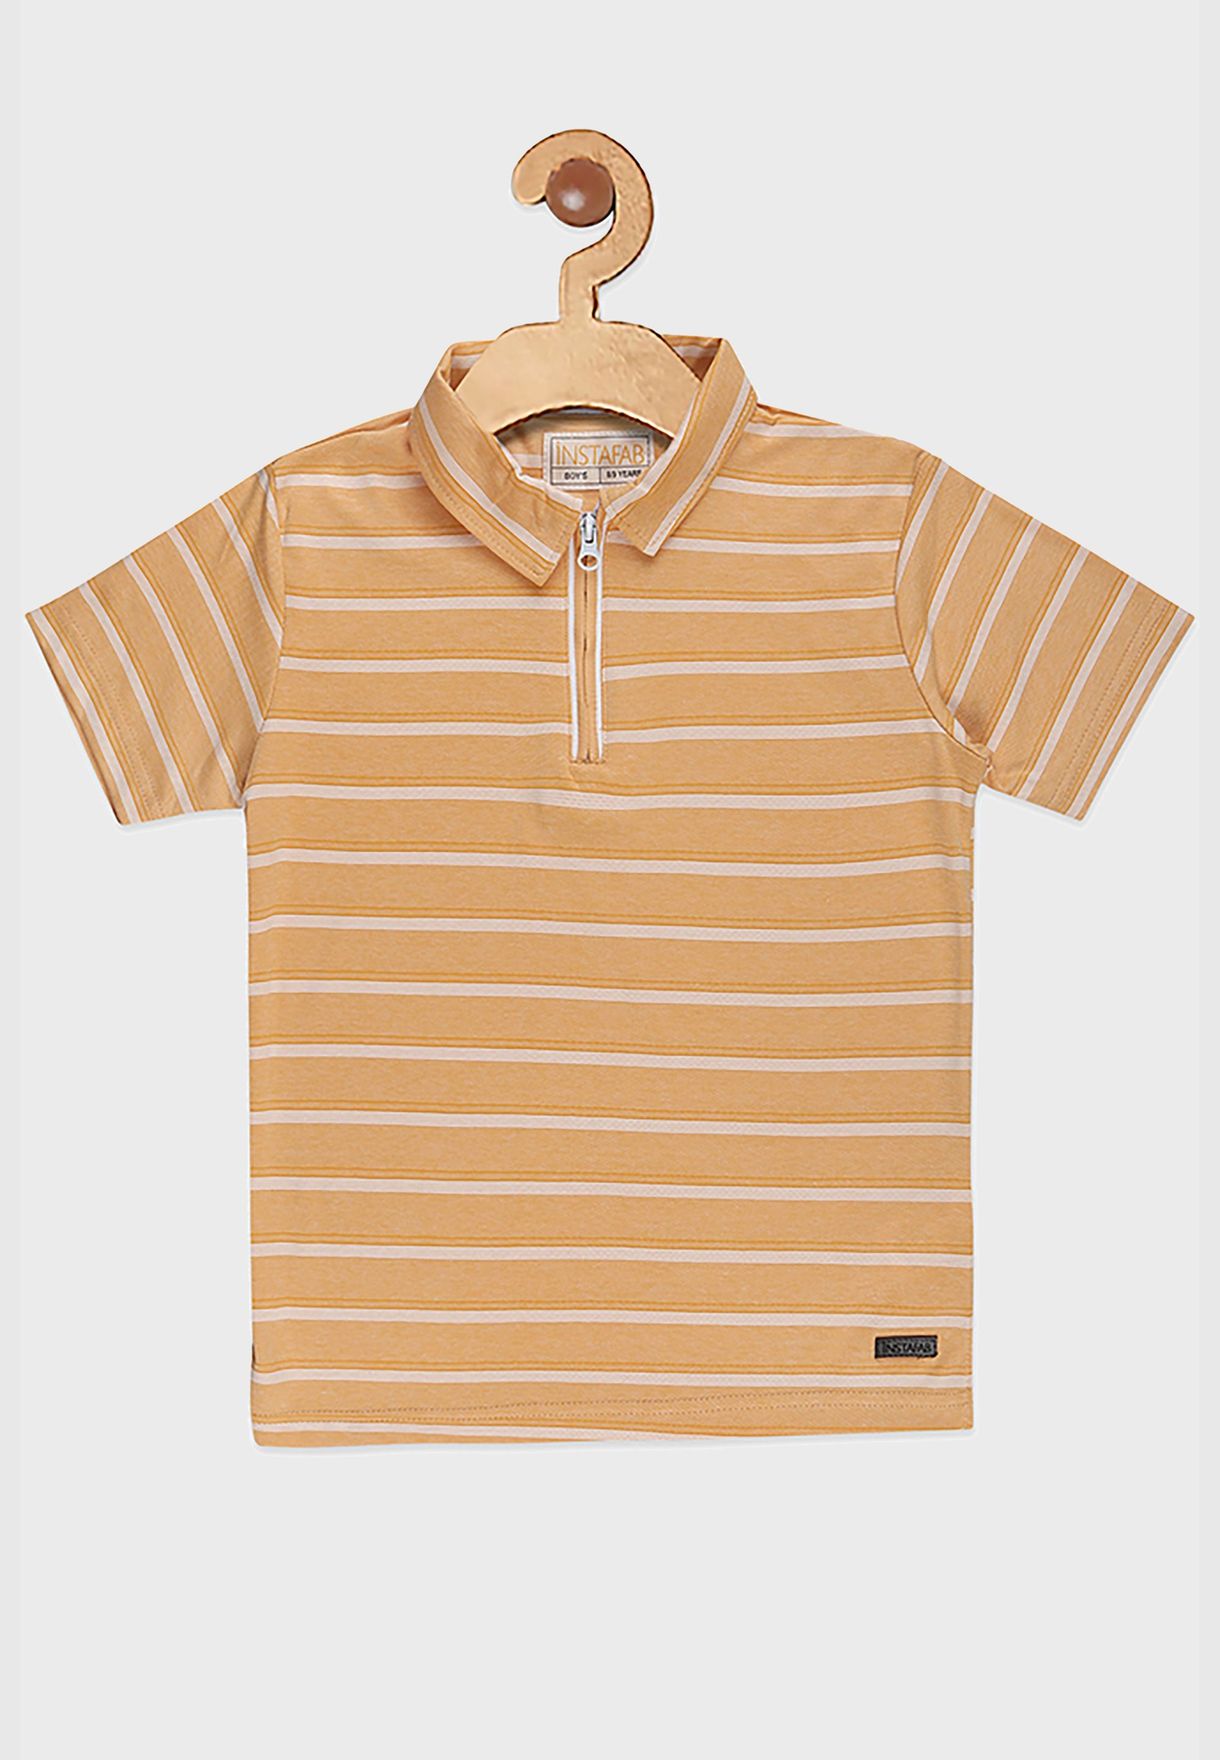 Striped Polo Tshirt